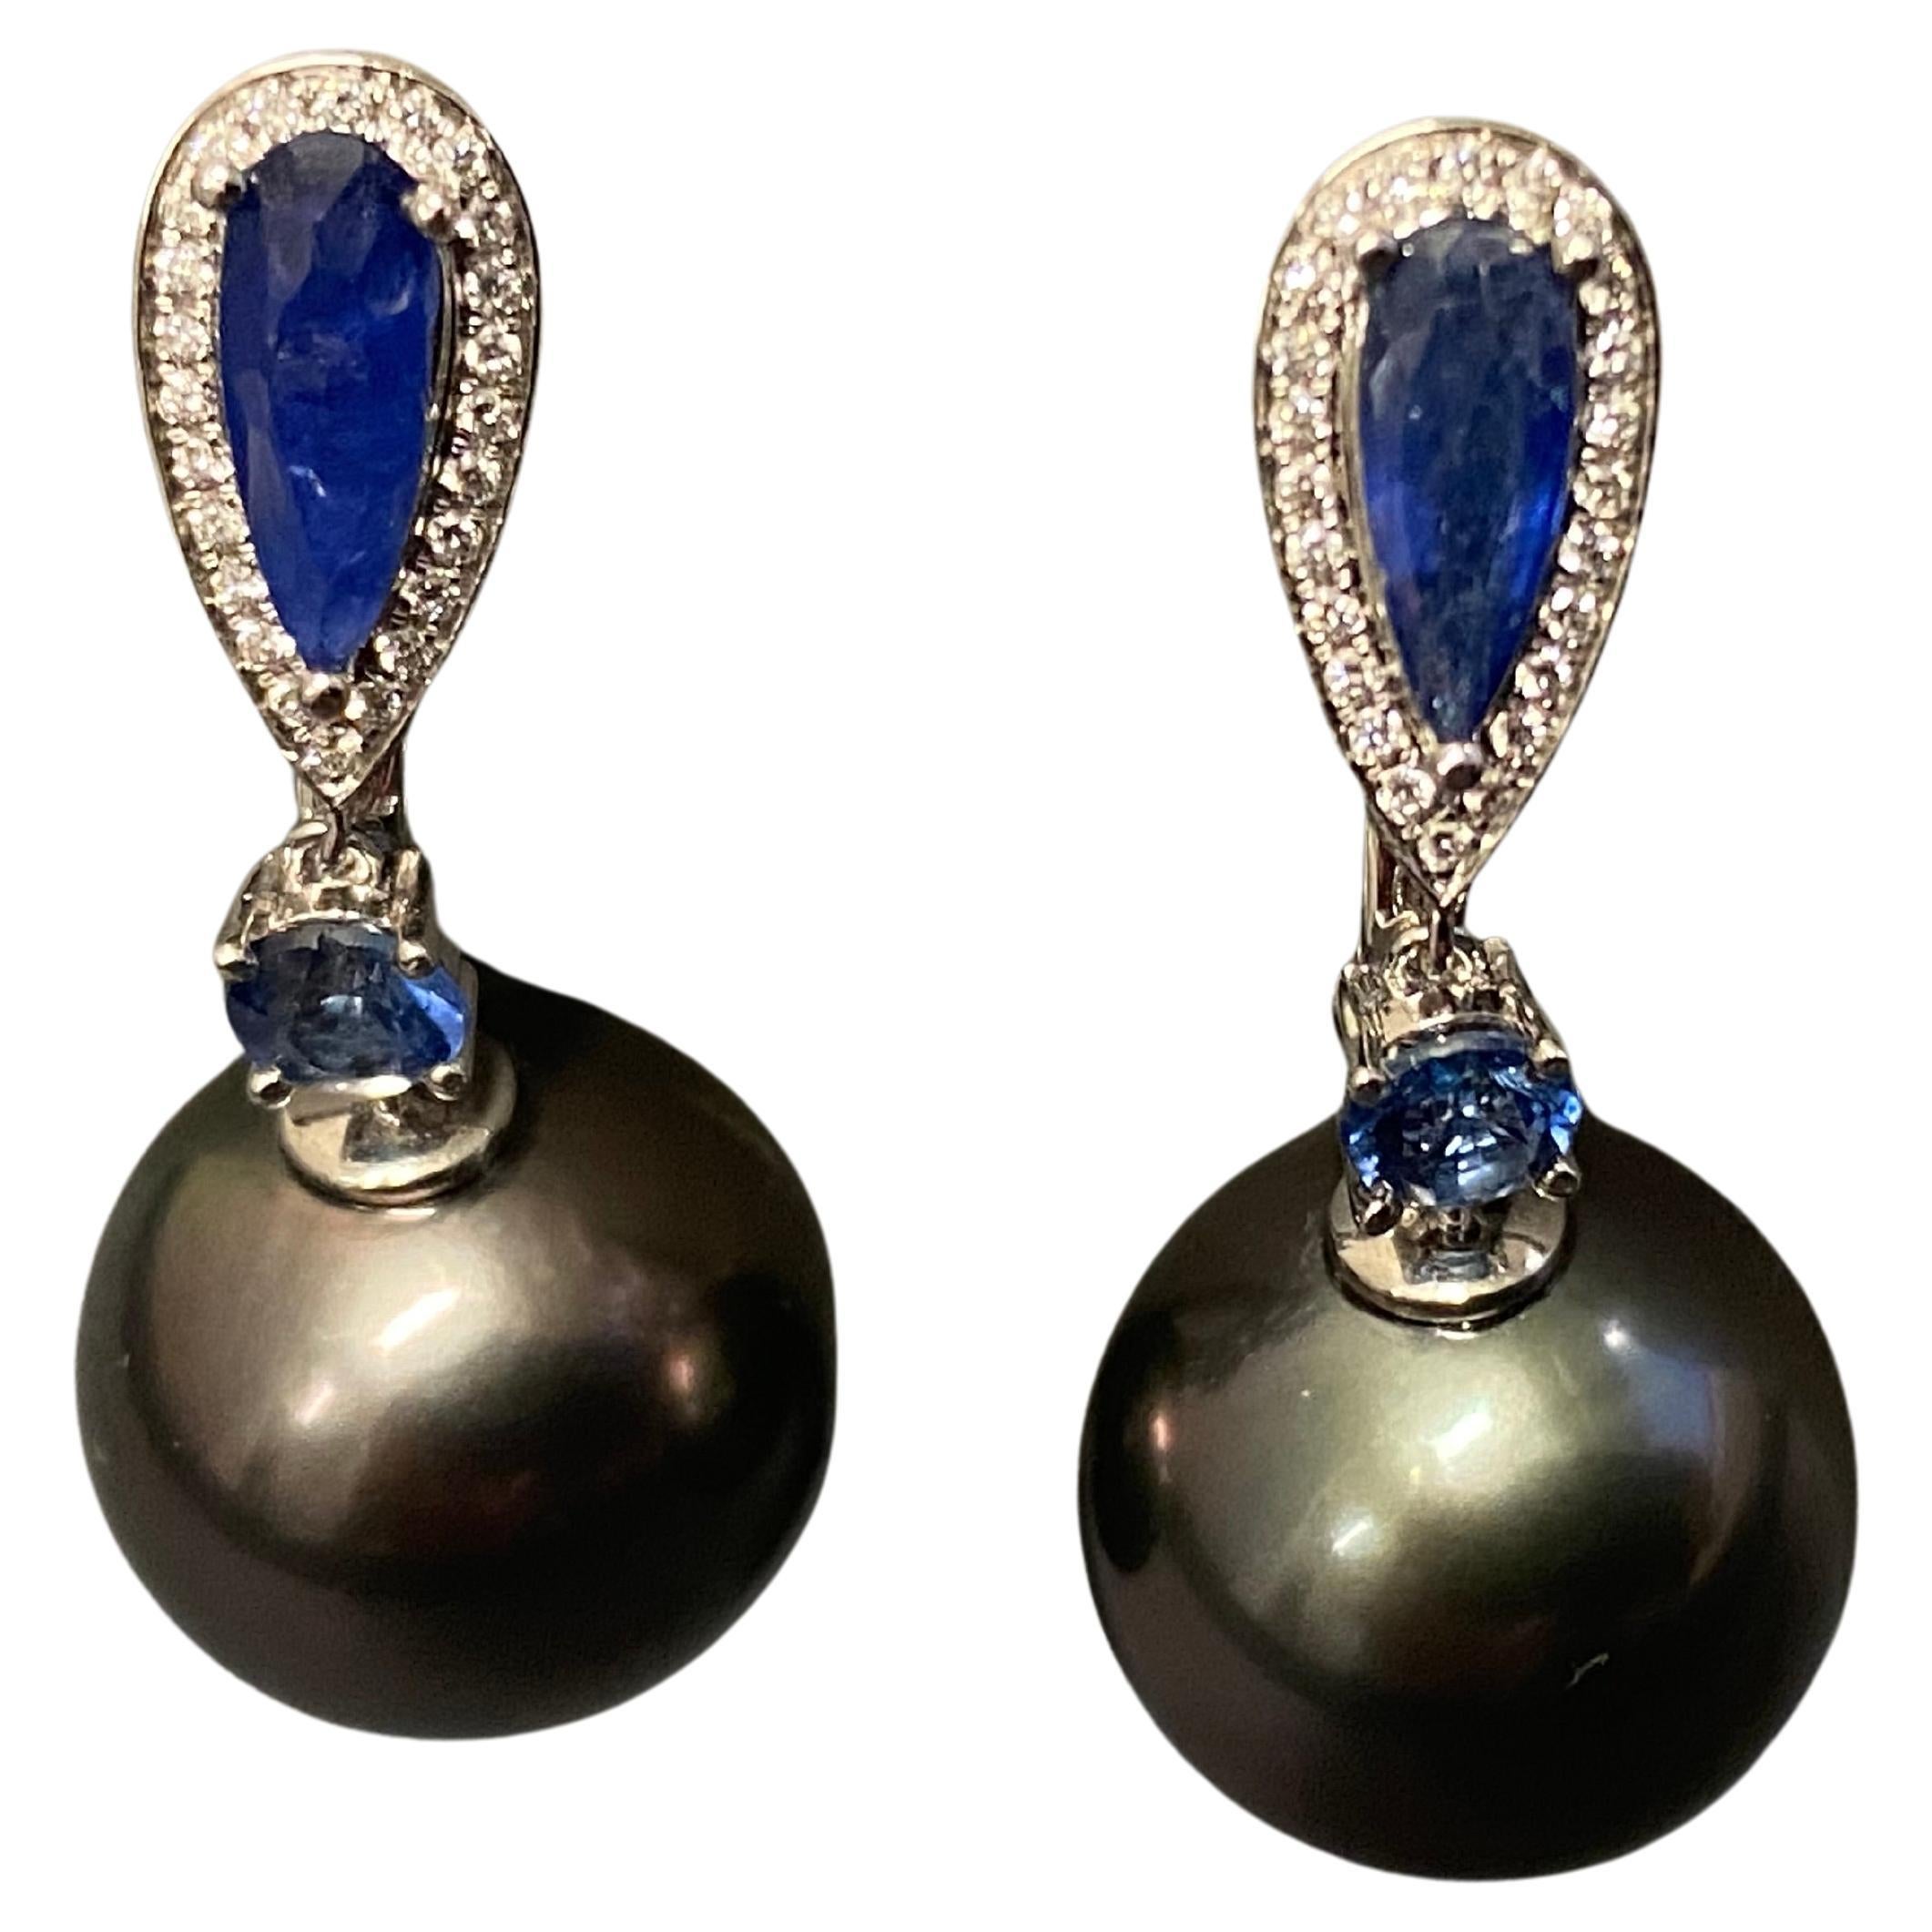 Boucles d'oreilles en or blanc 18 carats avec perles de Tahiti, saphirs bleus et diamants